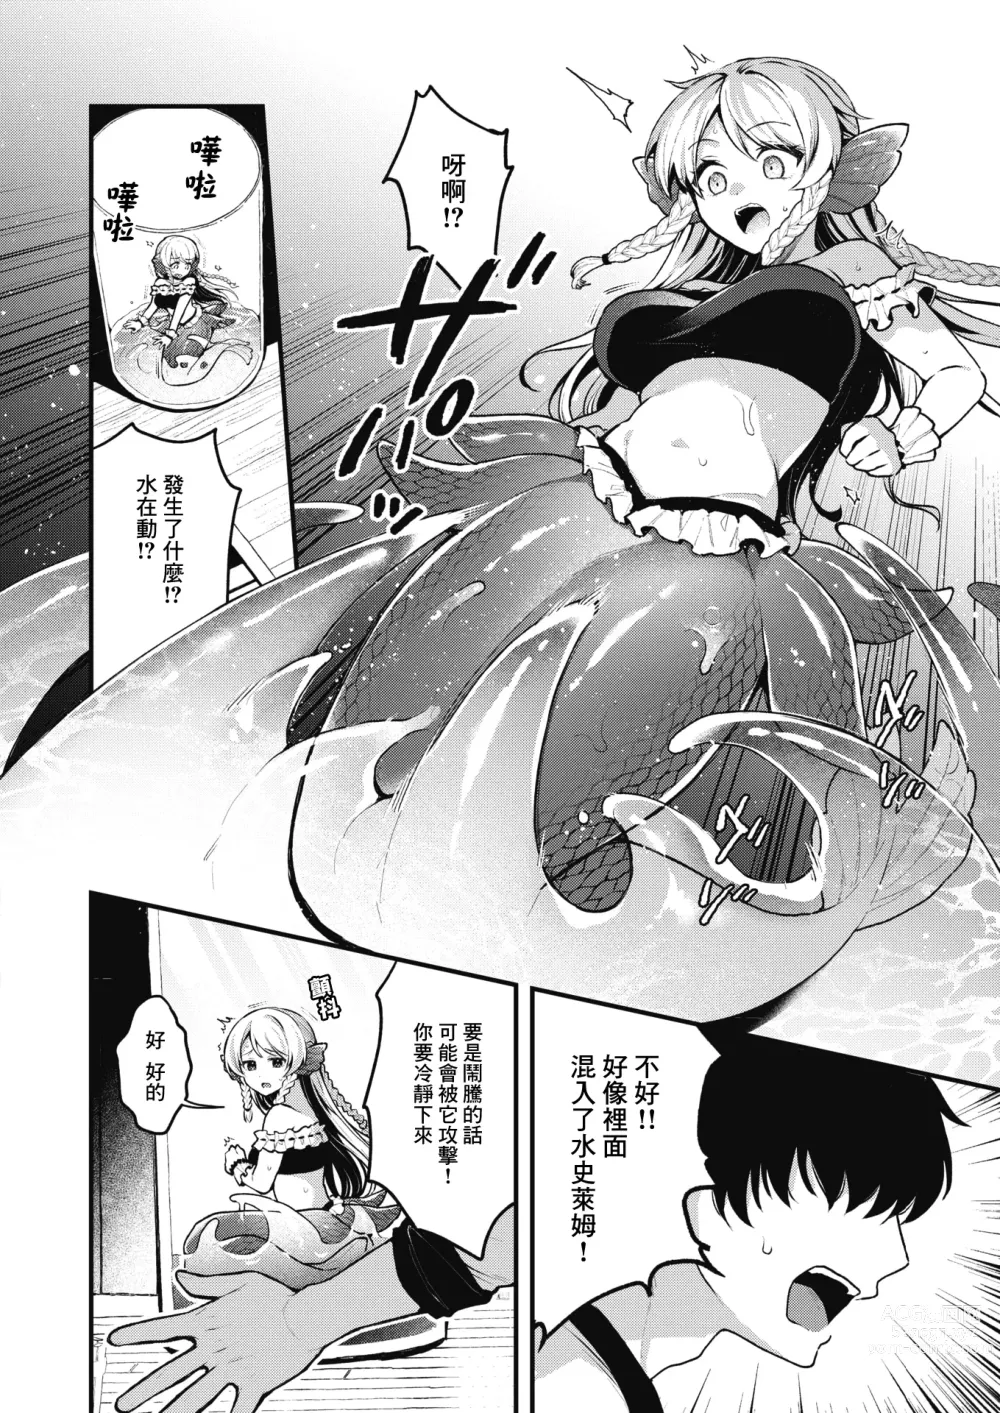 Page 7 of manga 雖然這裡沒有王子大人